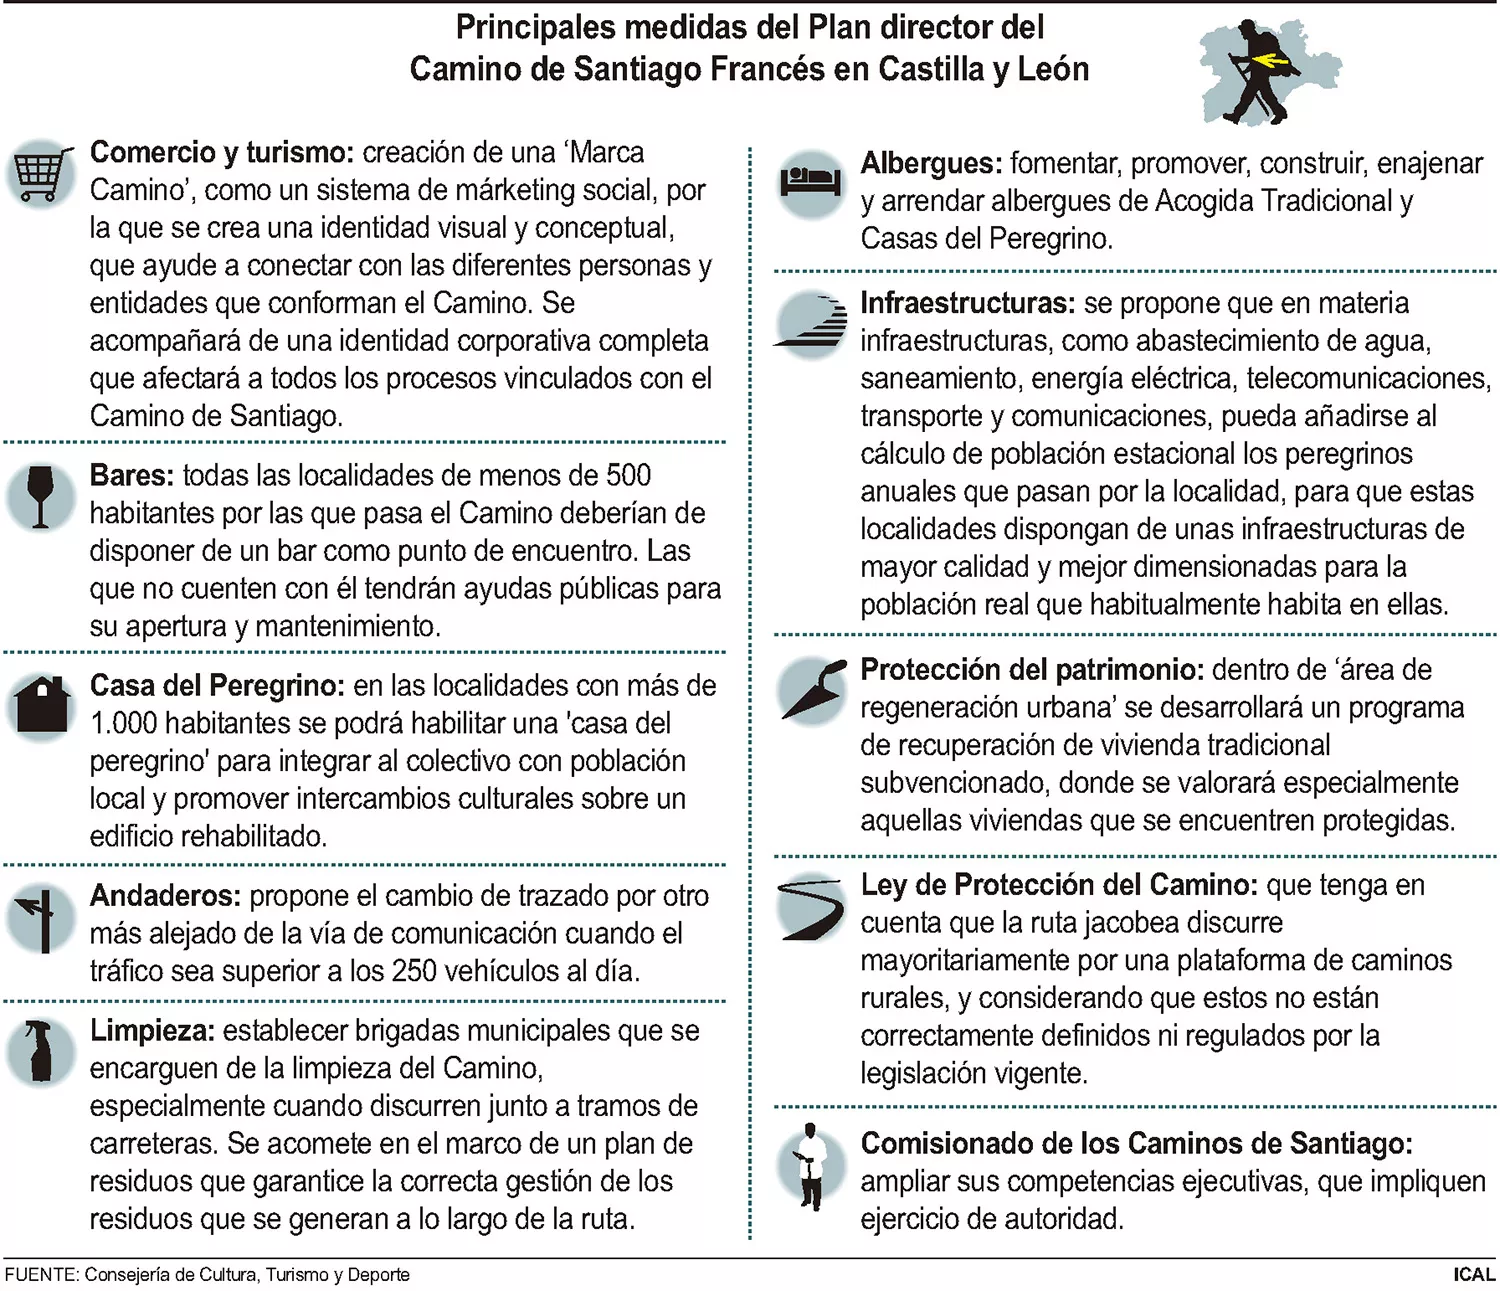 Principales medidas del Plan director del Camino de Santiago Francés en Castilla y León.